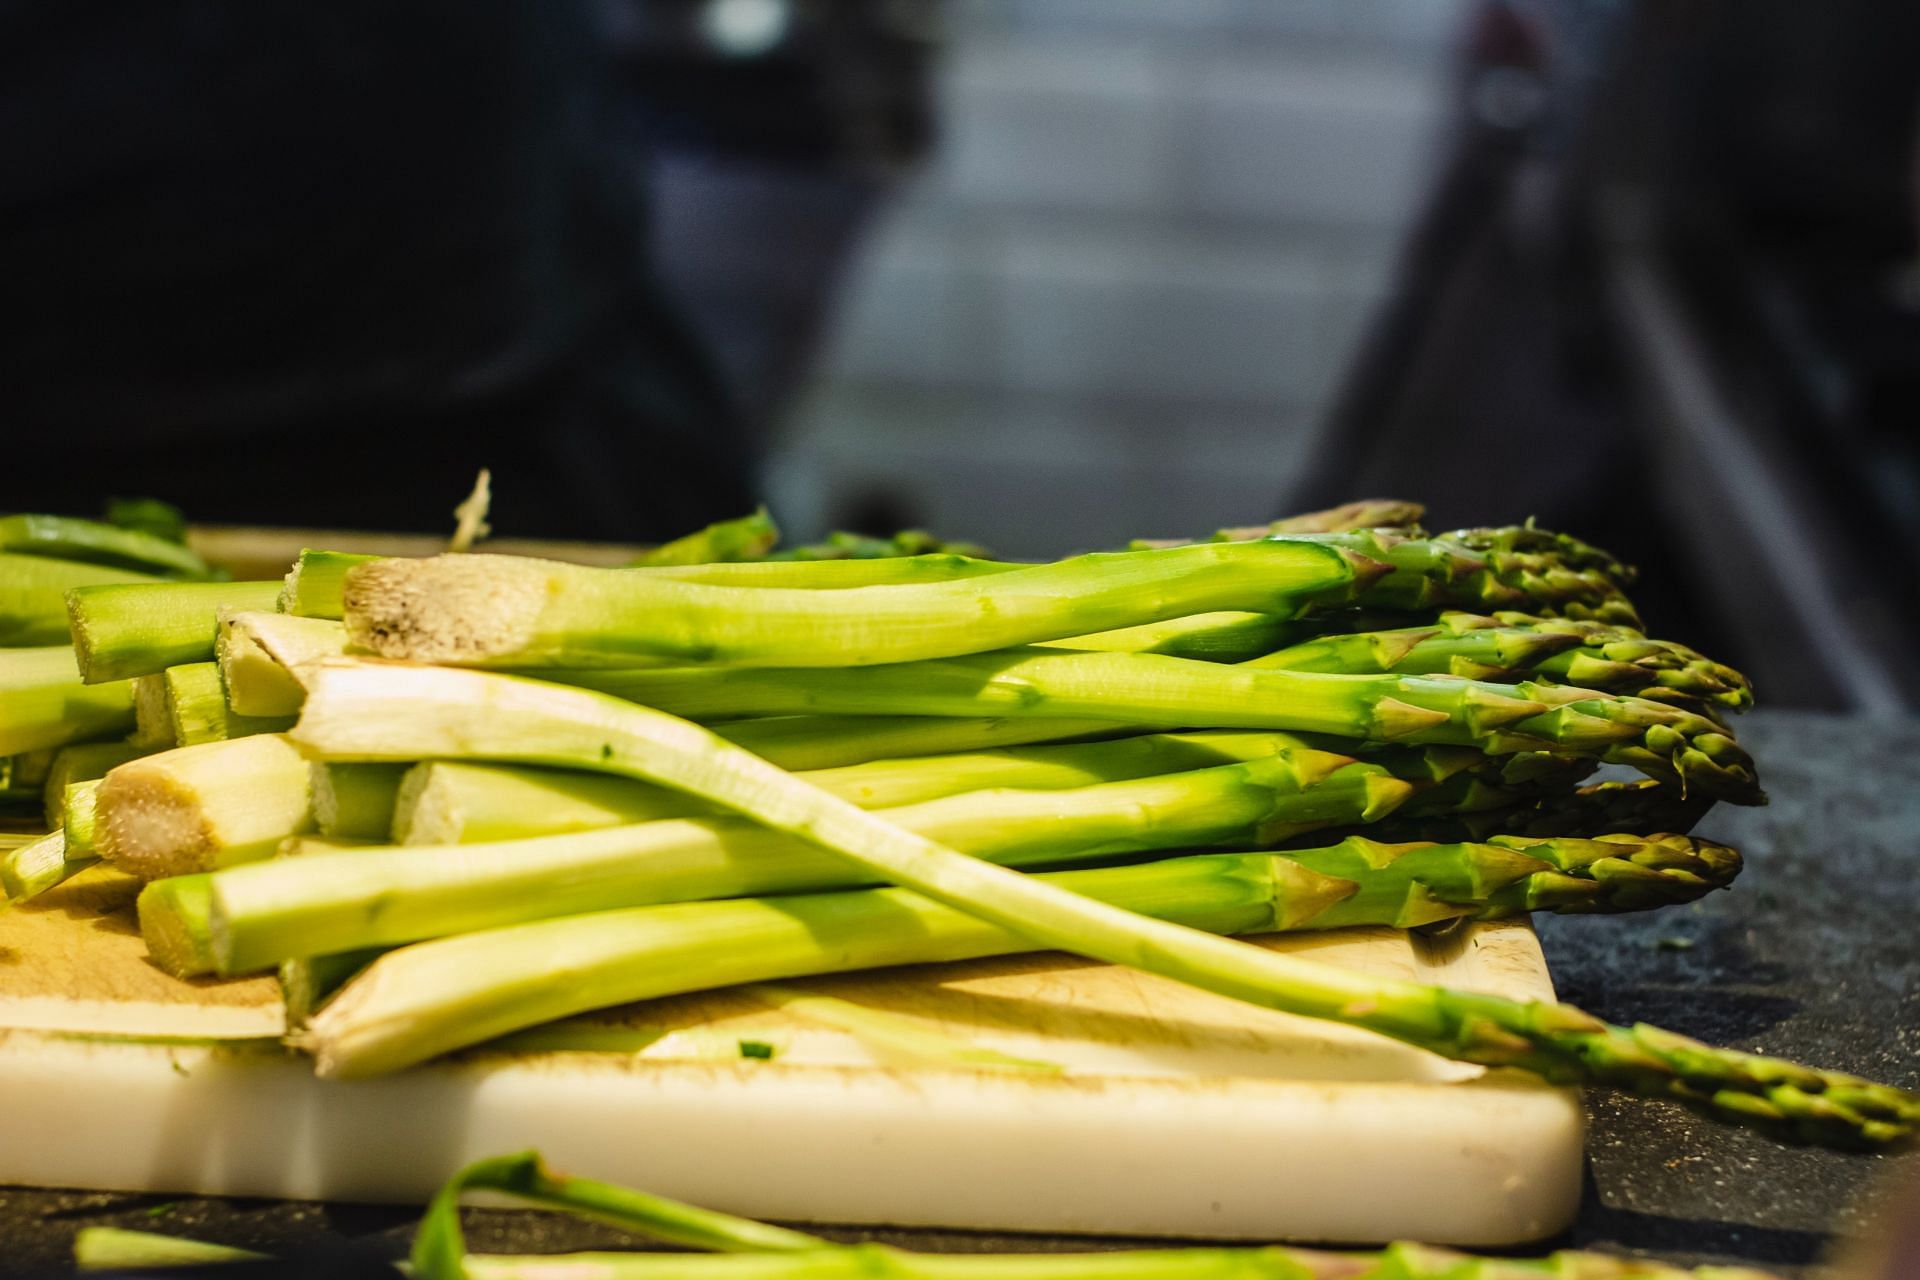 Asparagus is a nutritional powerhouse. (Image via Unsplash / Louis hansel)